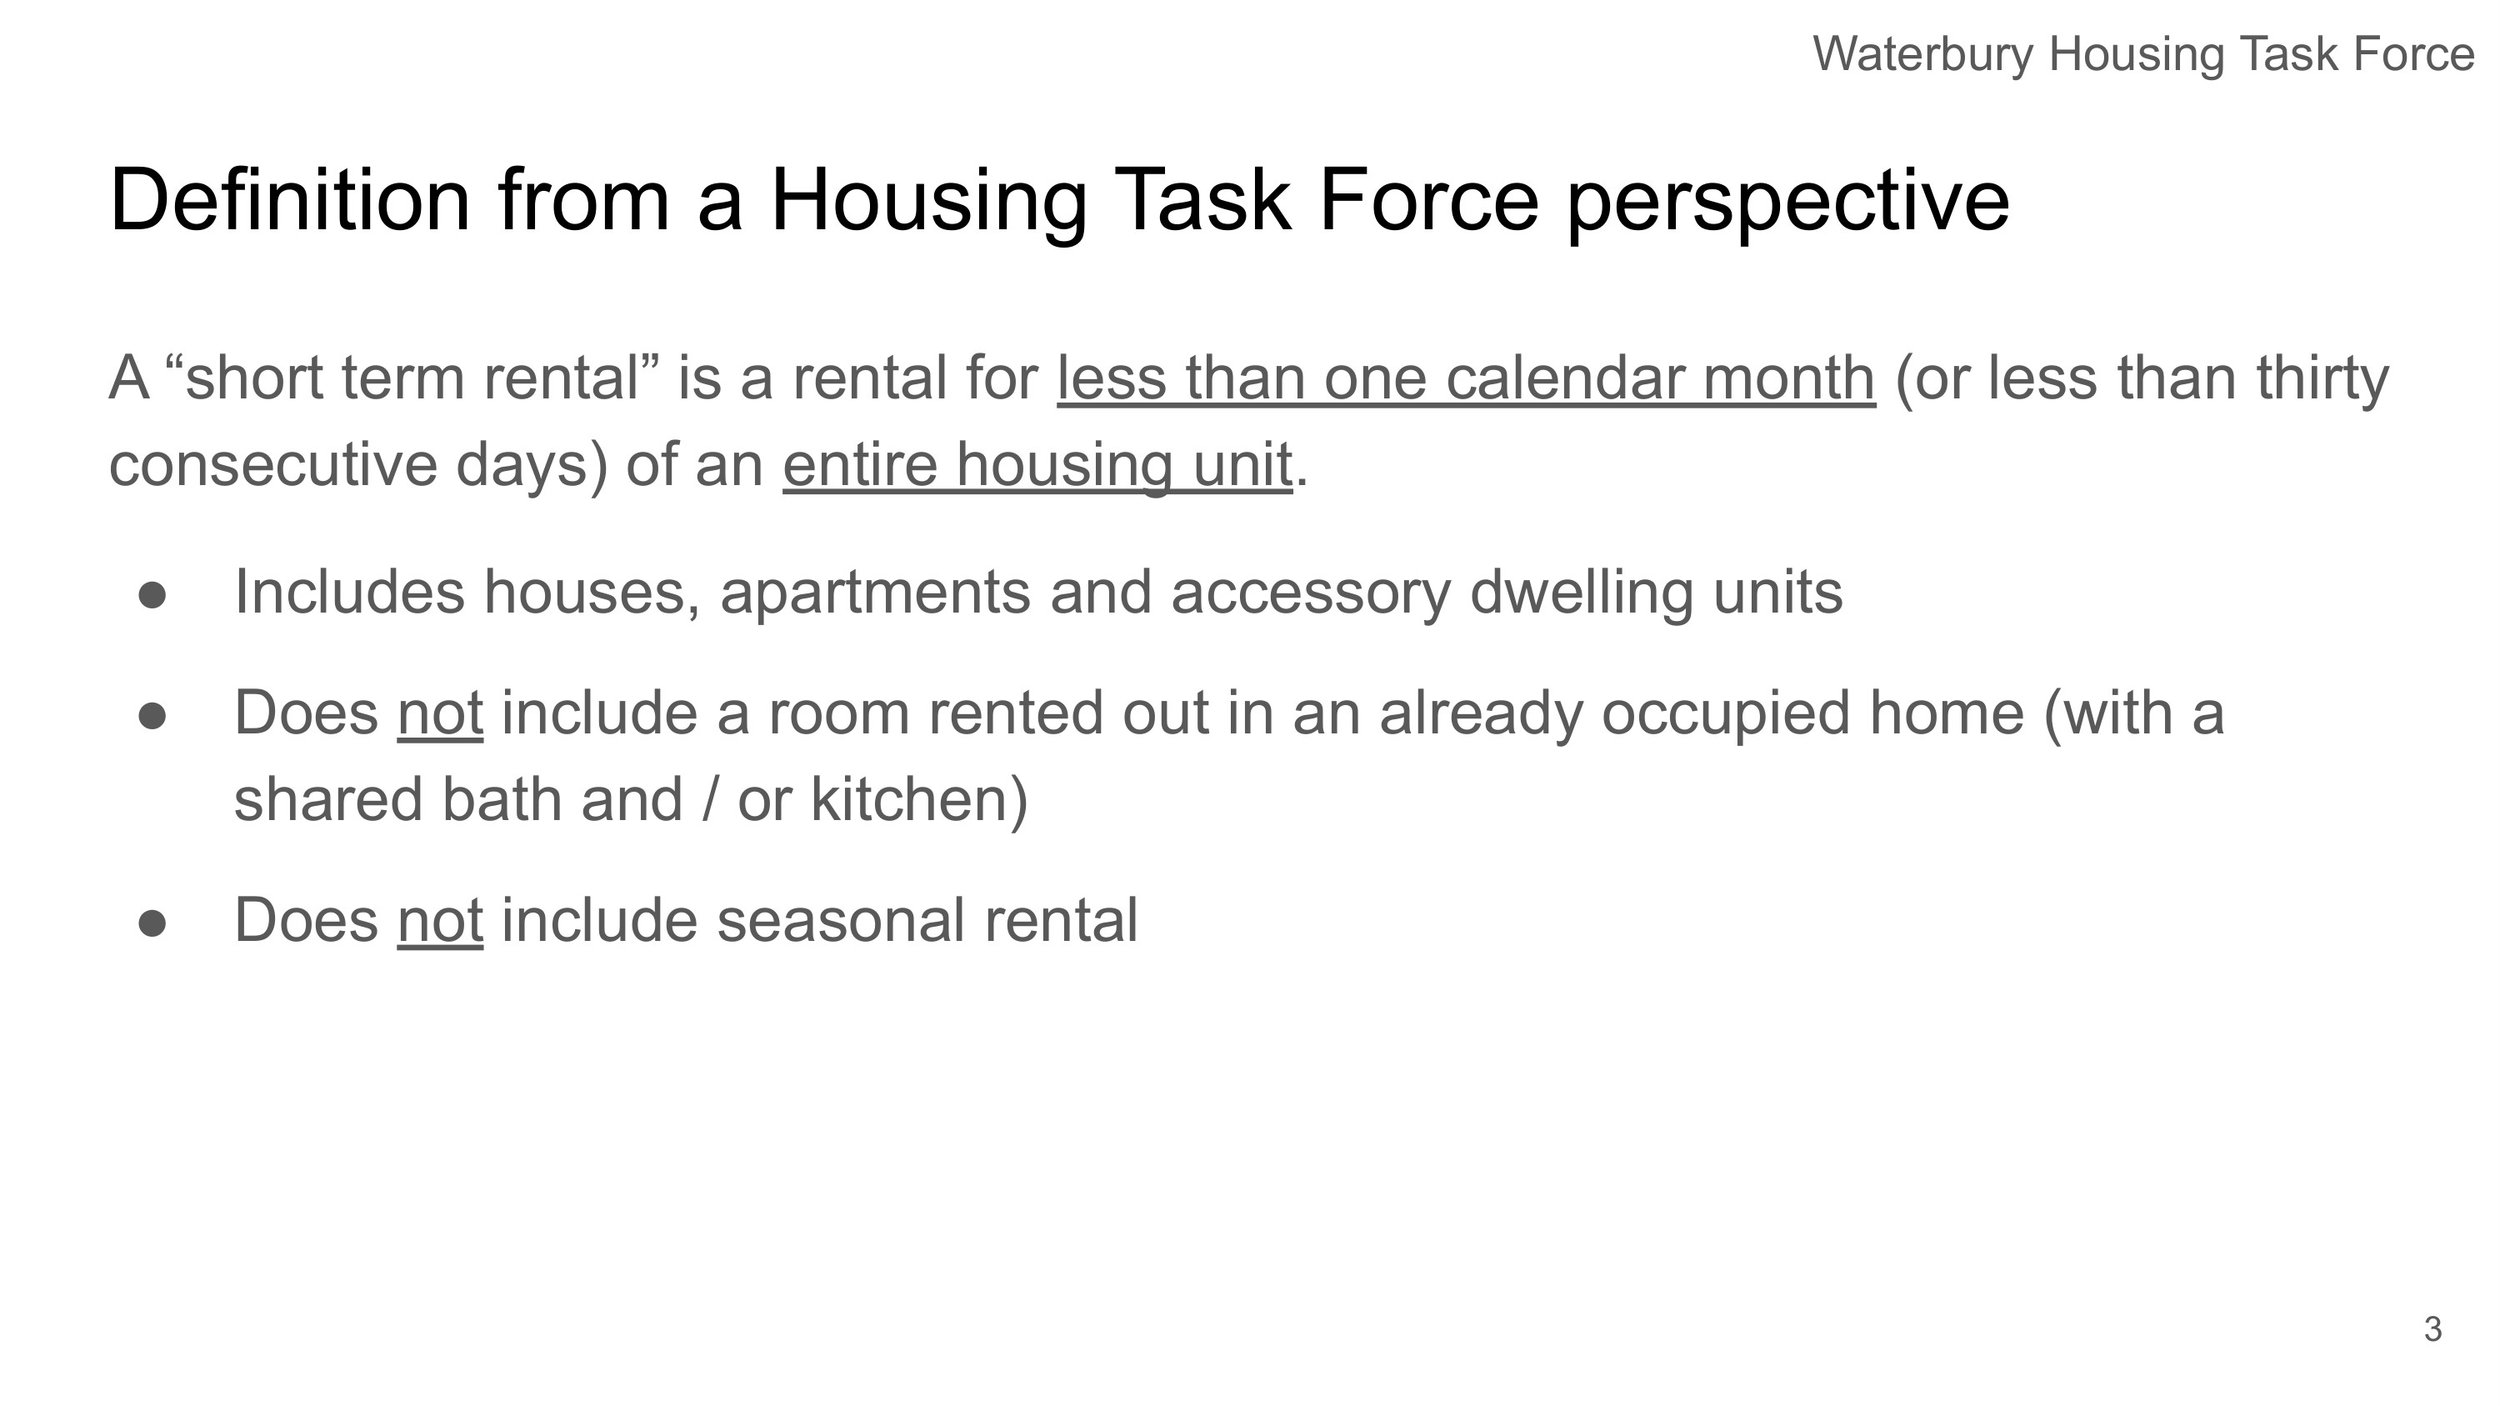 Waterbury Housing Task Force - STR Assessment-3.jpg